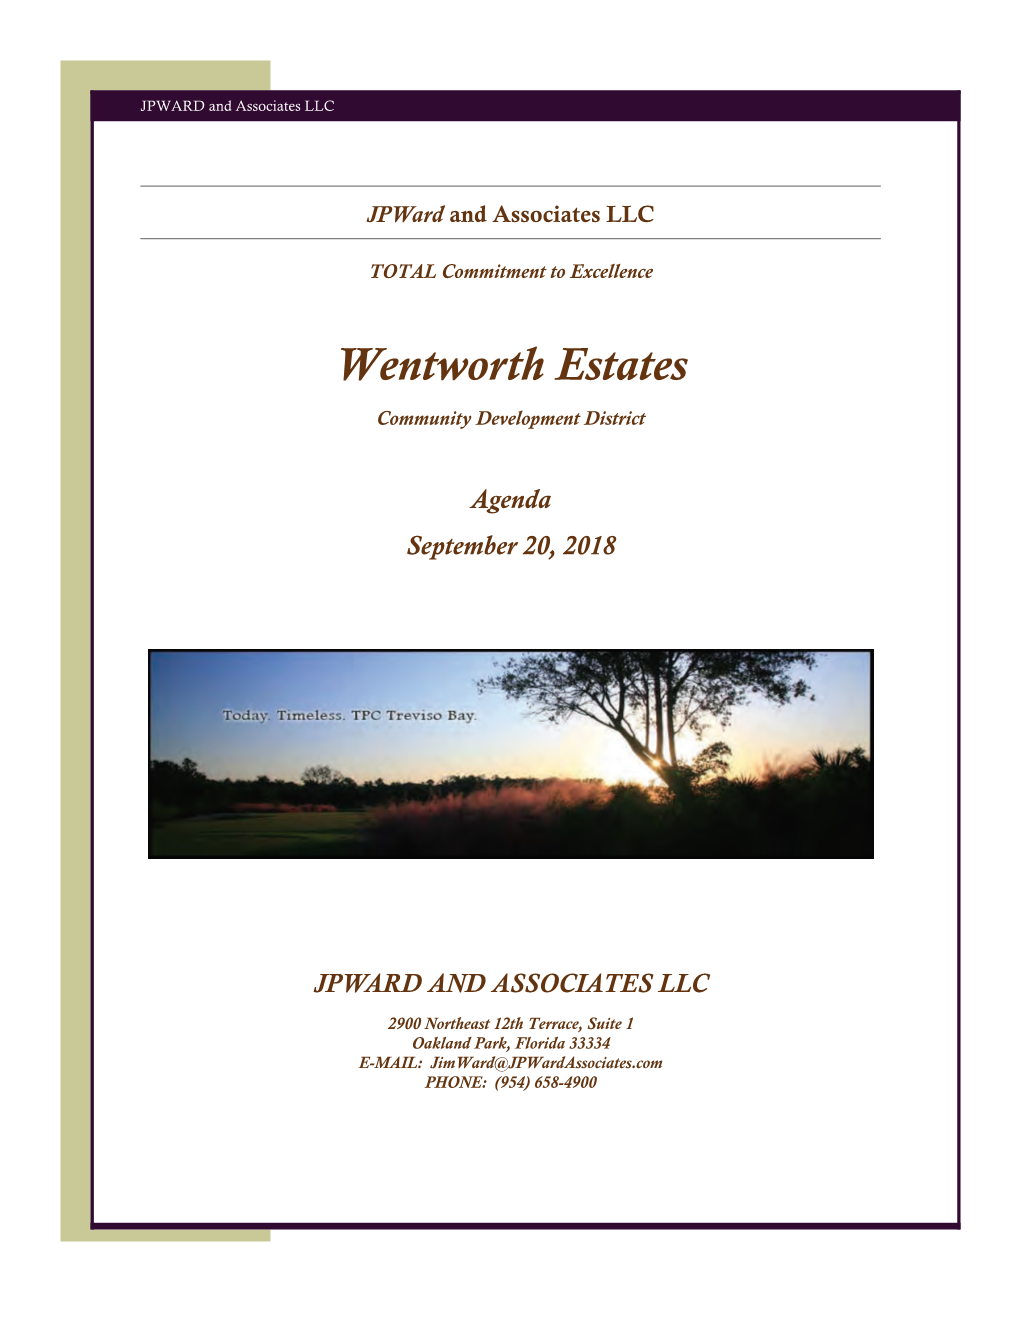 Wentworth Estates Community Development District